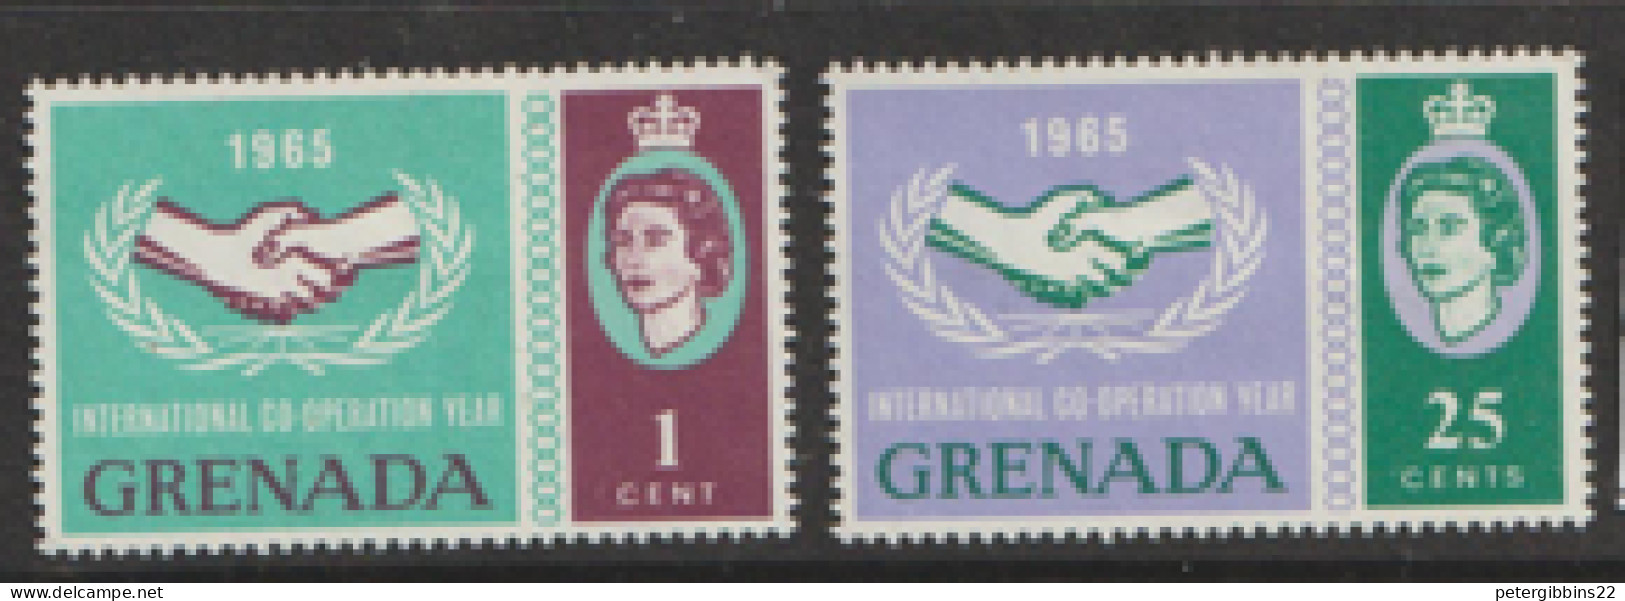 Grenada  1965  SG  223-4  I C Y  Mounted Mint - Grenada (...-1974)